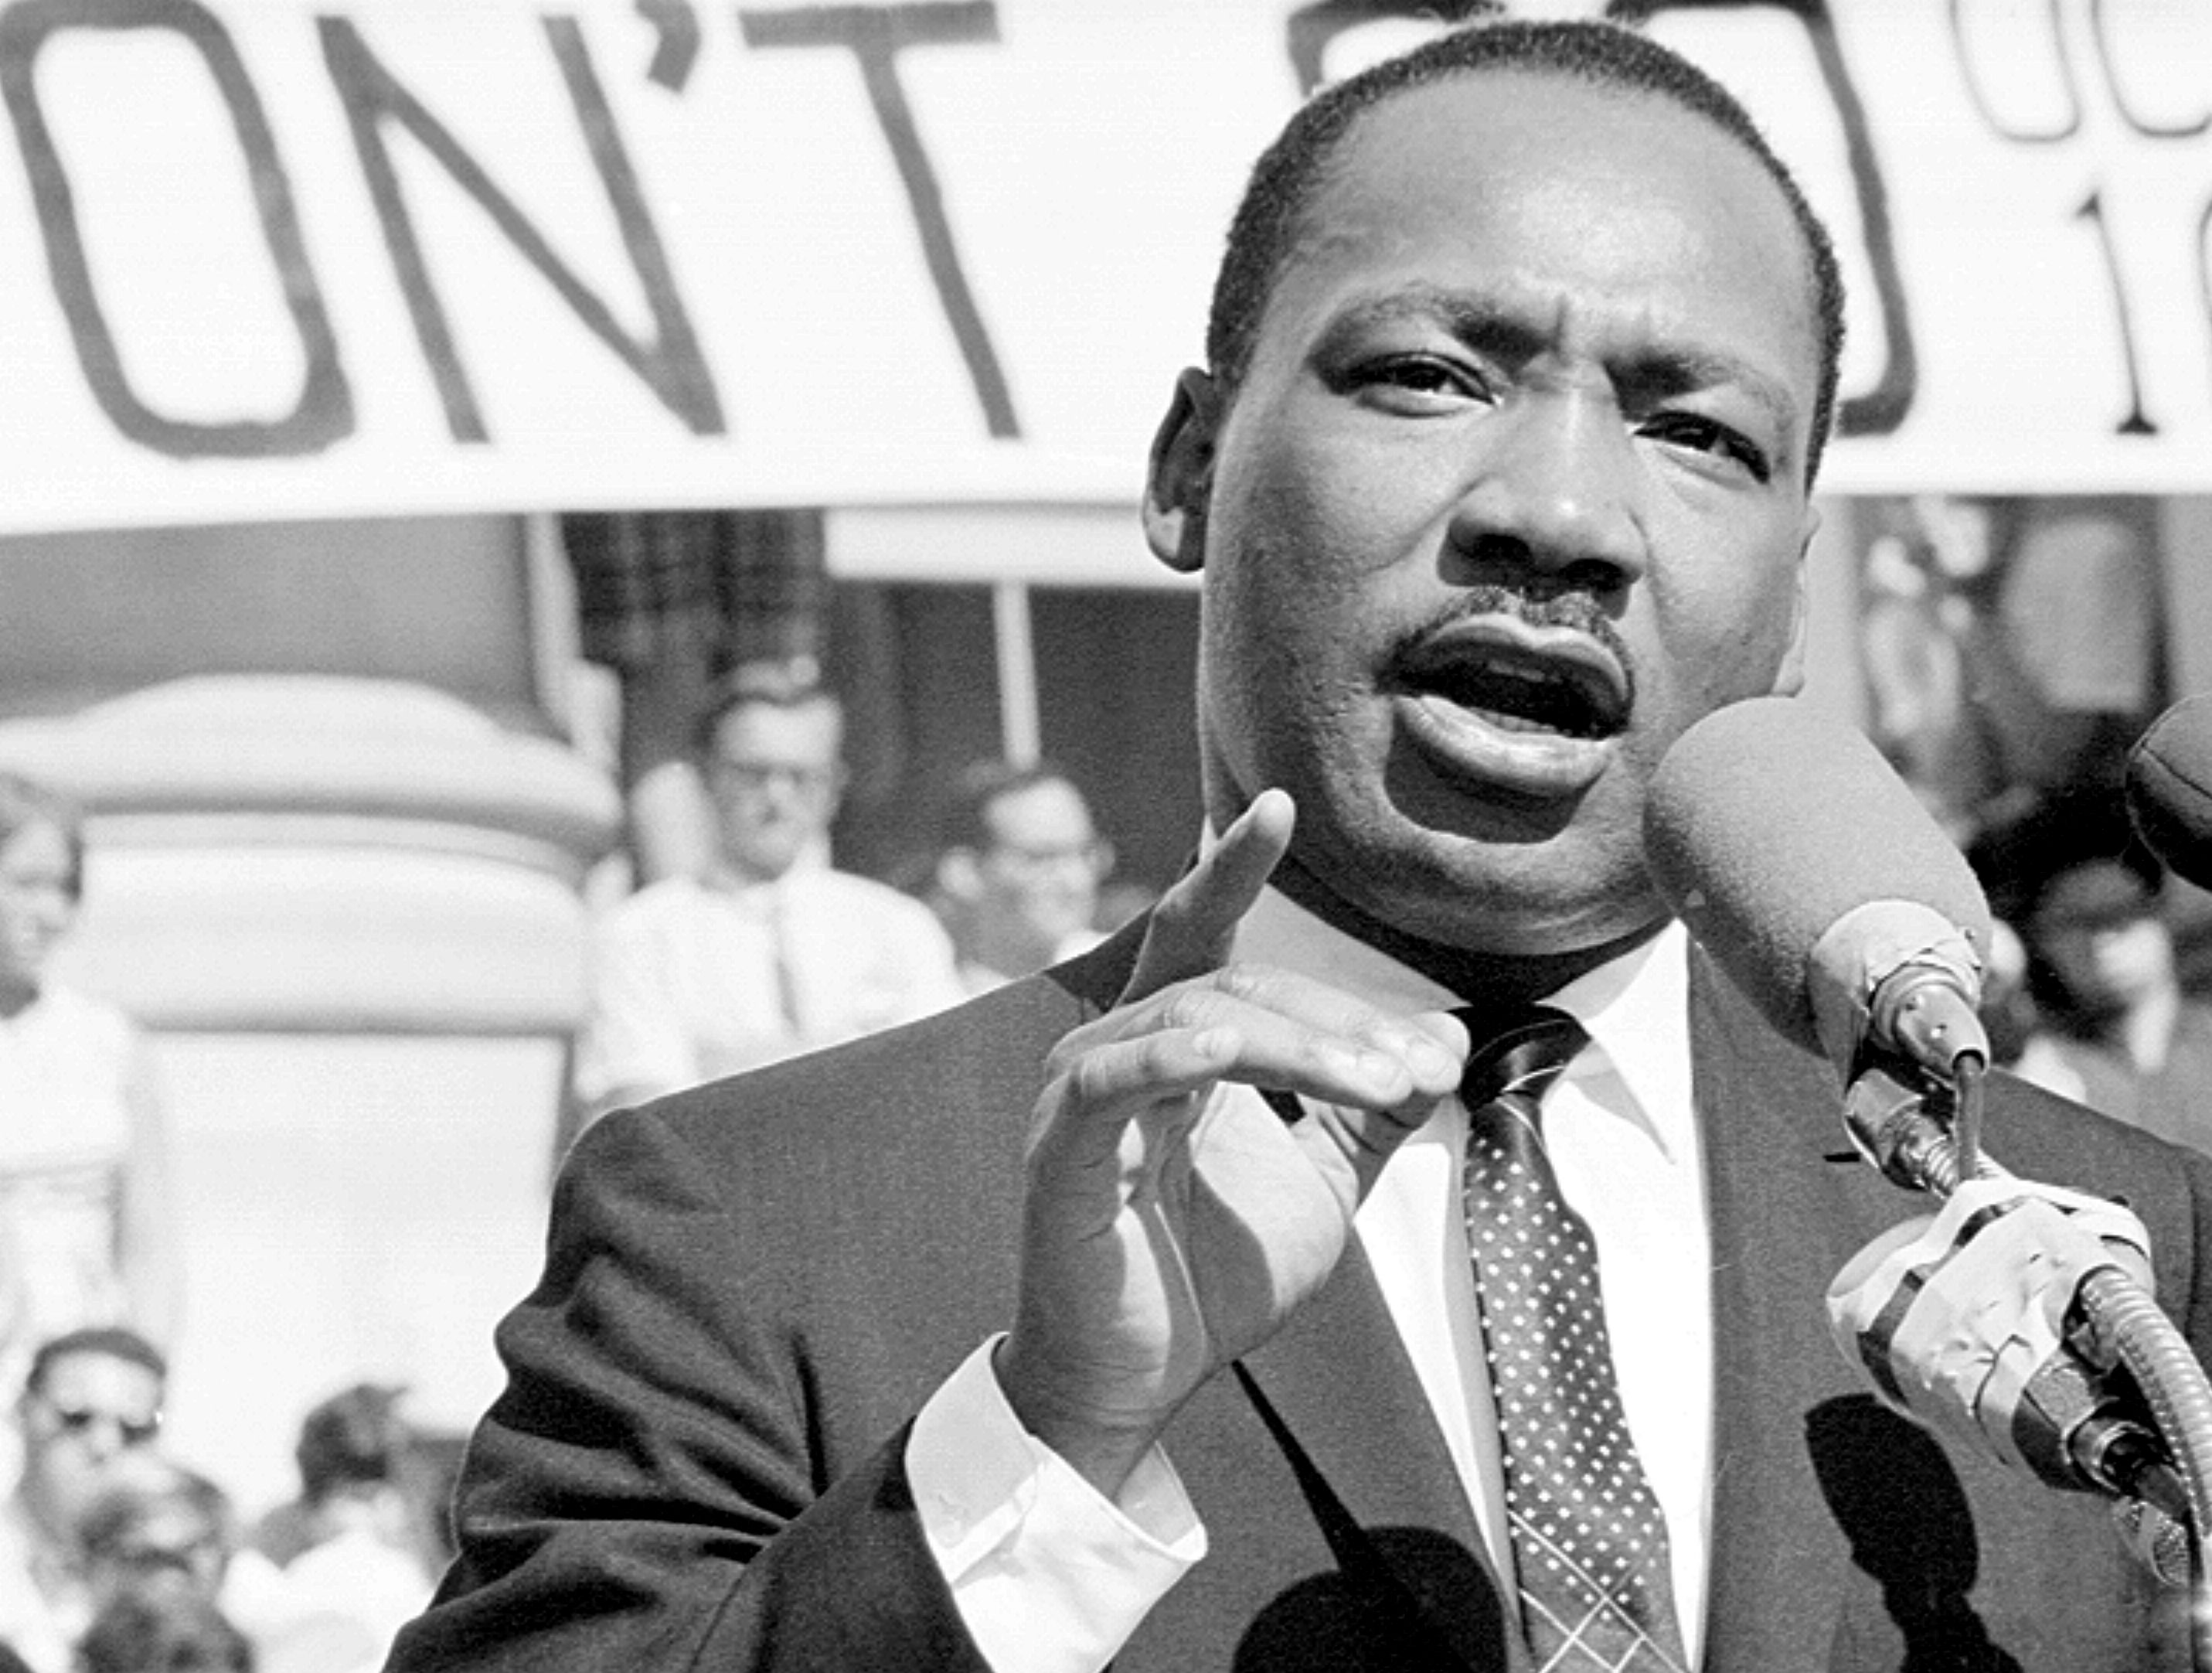 マーティン・ルーサー・キング・ジュニア牧師と公民権運動の歴史を深 ...